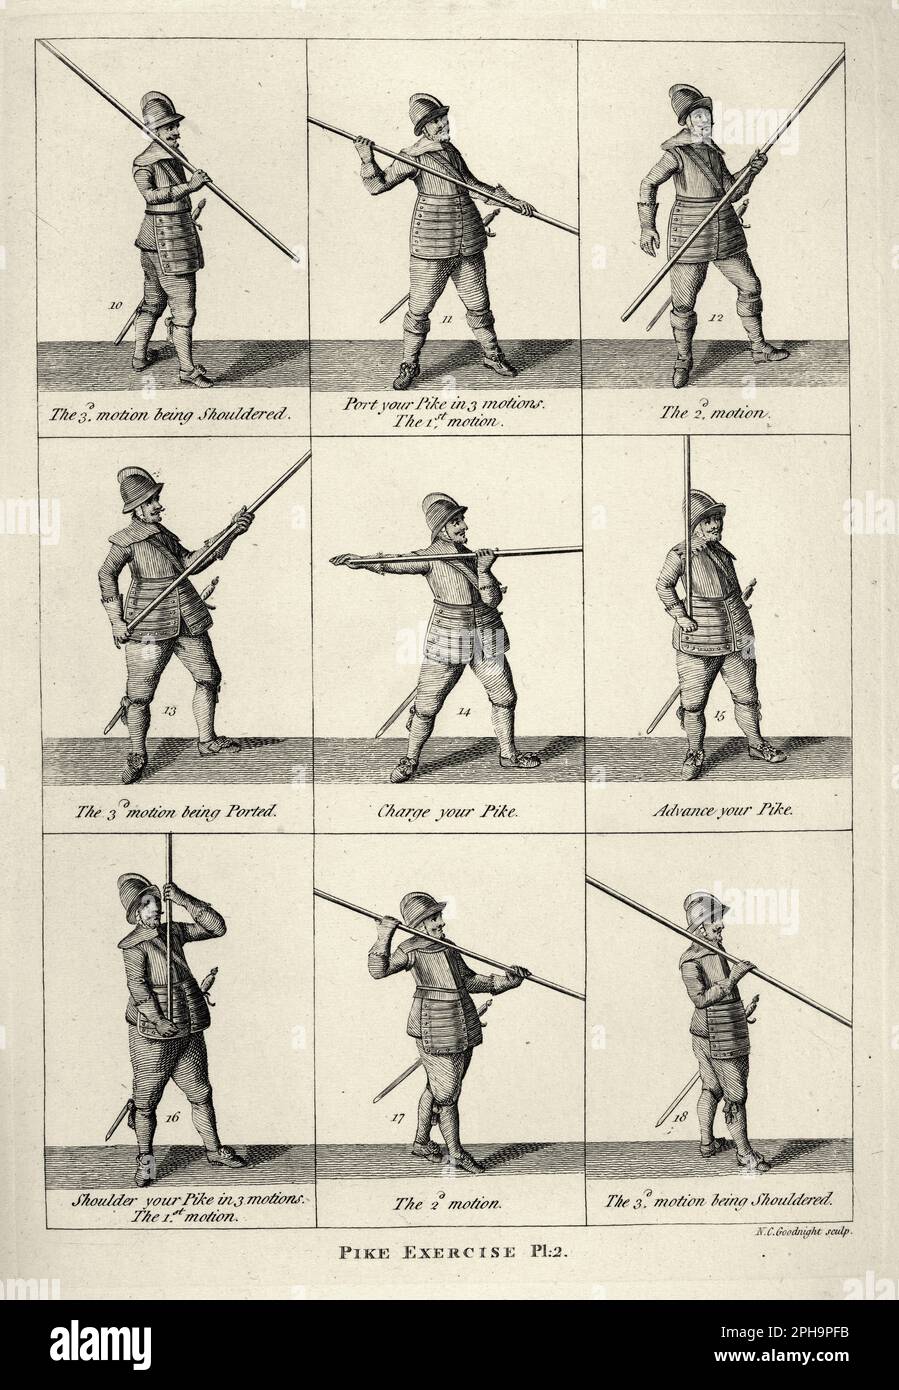 Illustrazione vintage, soldato inglese, Pikeman, esercizio con il Pike, Spear, Fanteria, Storia militare, armi 17th ° secolo Foto Stock